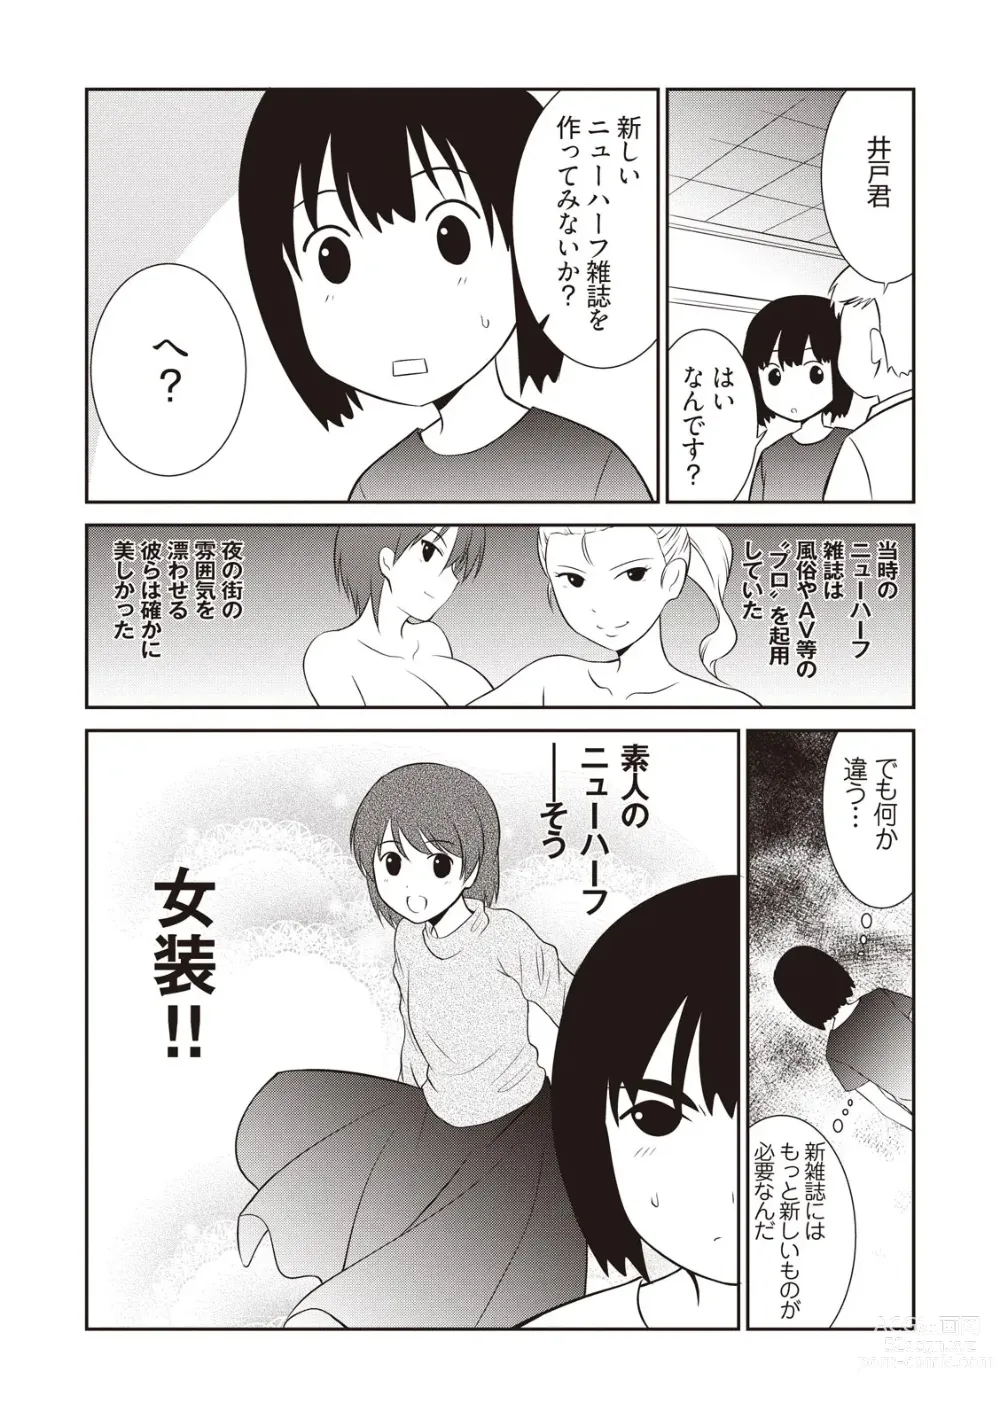 Page 27 of manga Manga de Furikaeru Otokonoko 10-nenshi